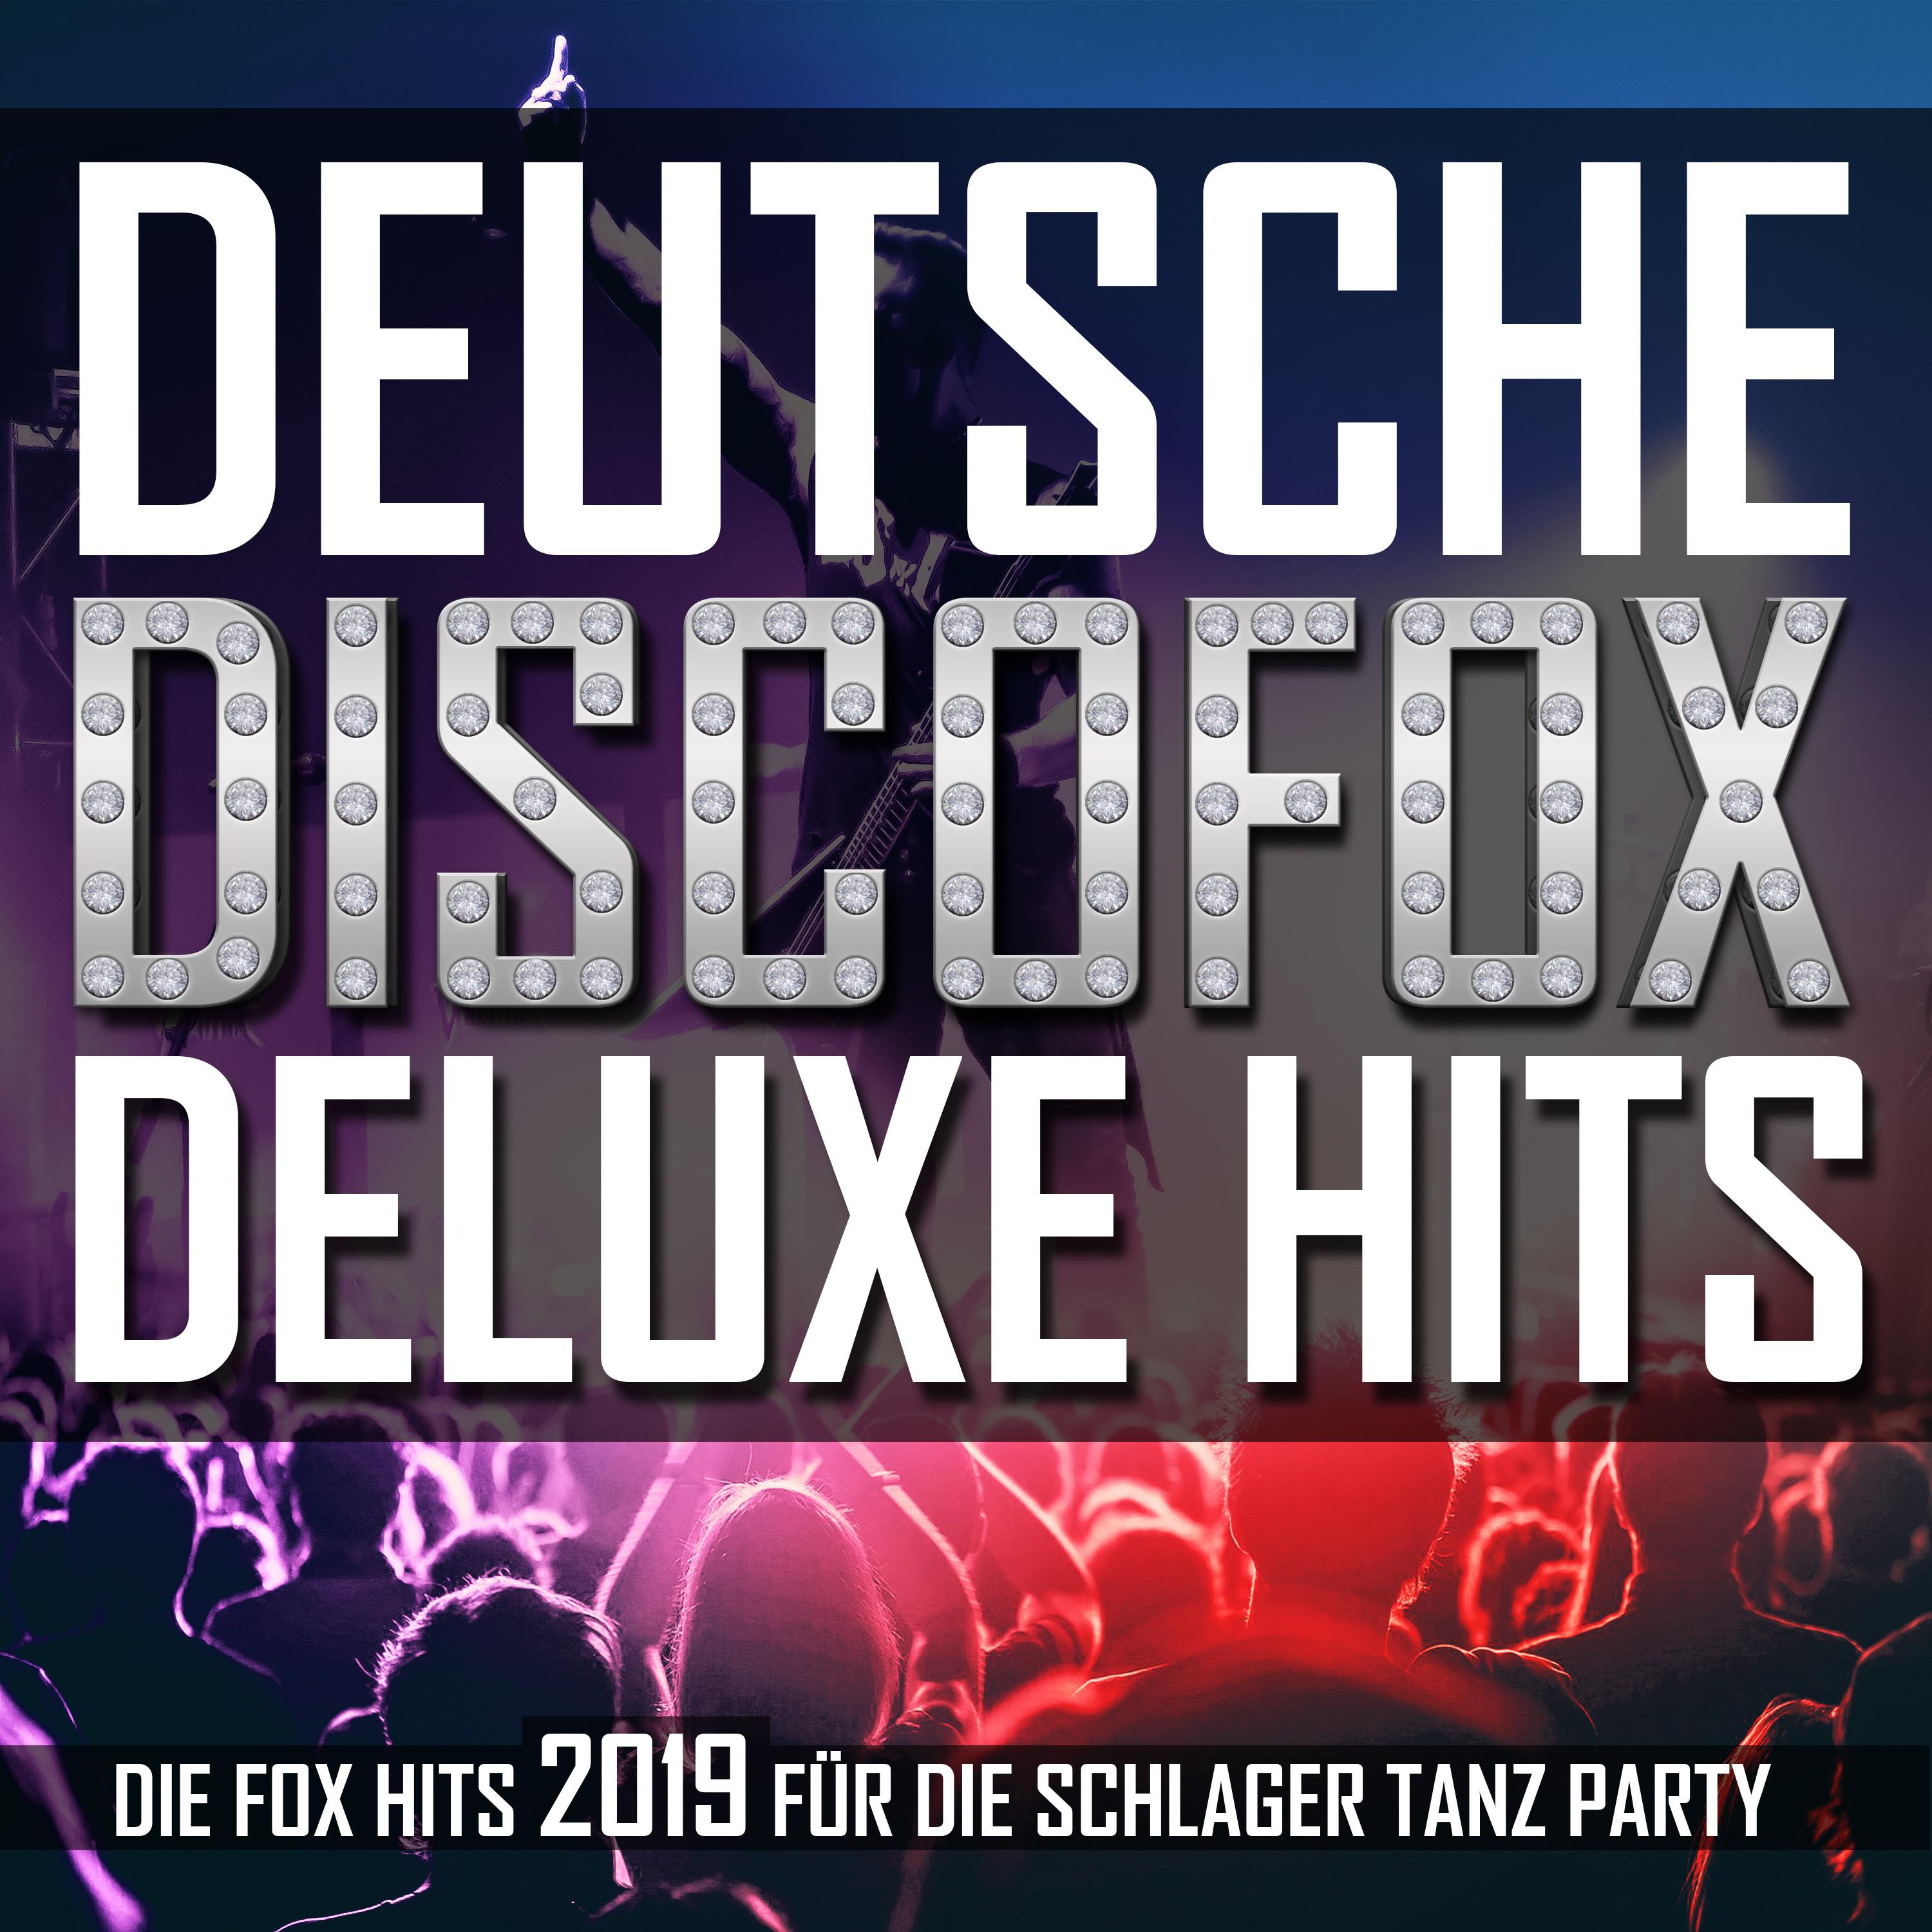 Deutsche Discofox Deluxe Hits  Die Fox Hits 2019 fü r die Schlager Tanz Party